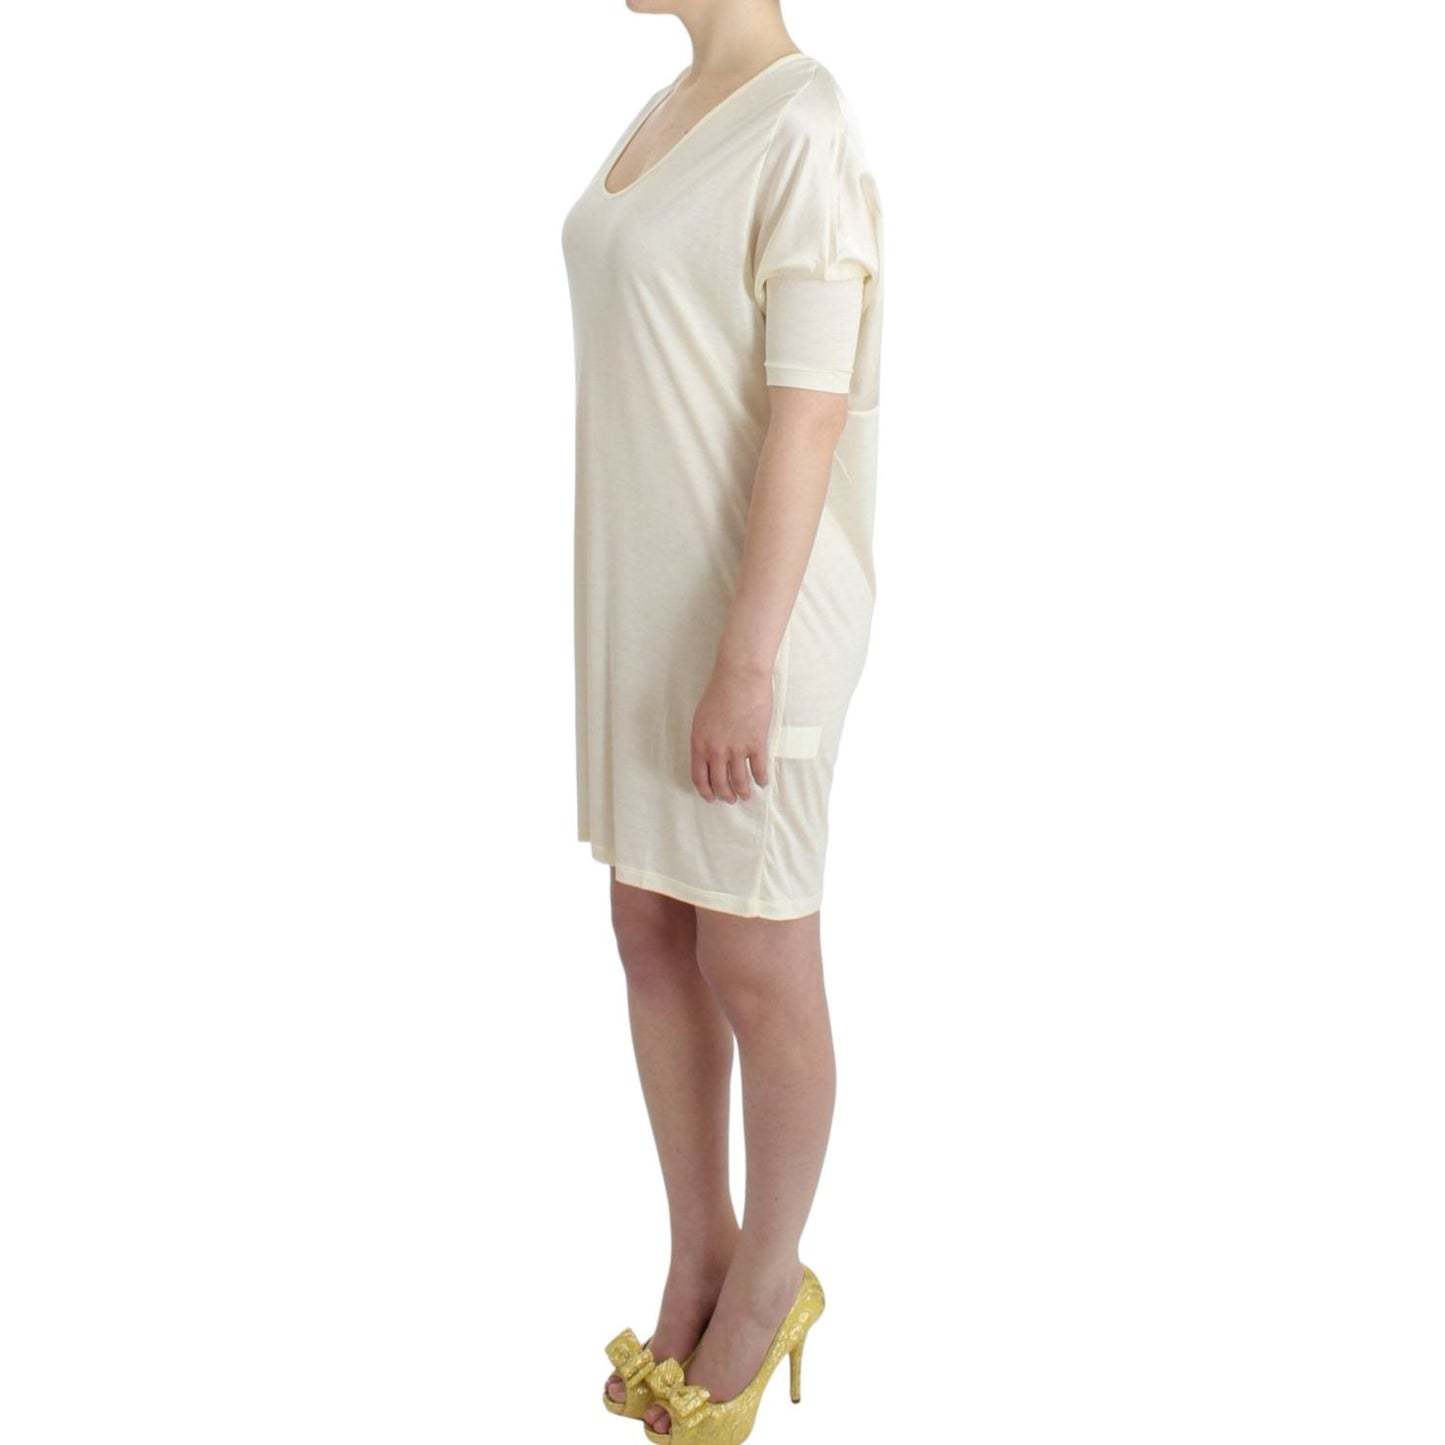 Costume National Chic White Modal Above-Knee Dress white-modal-tube-dress